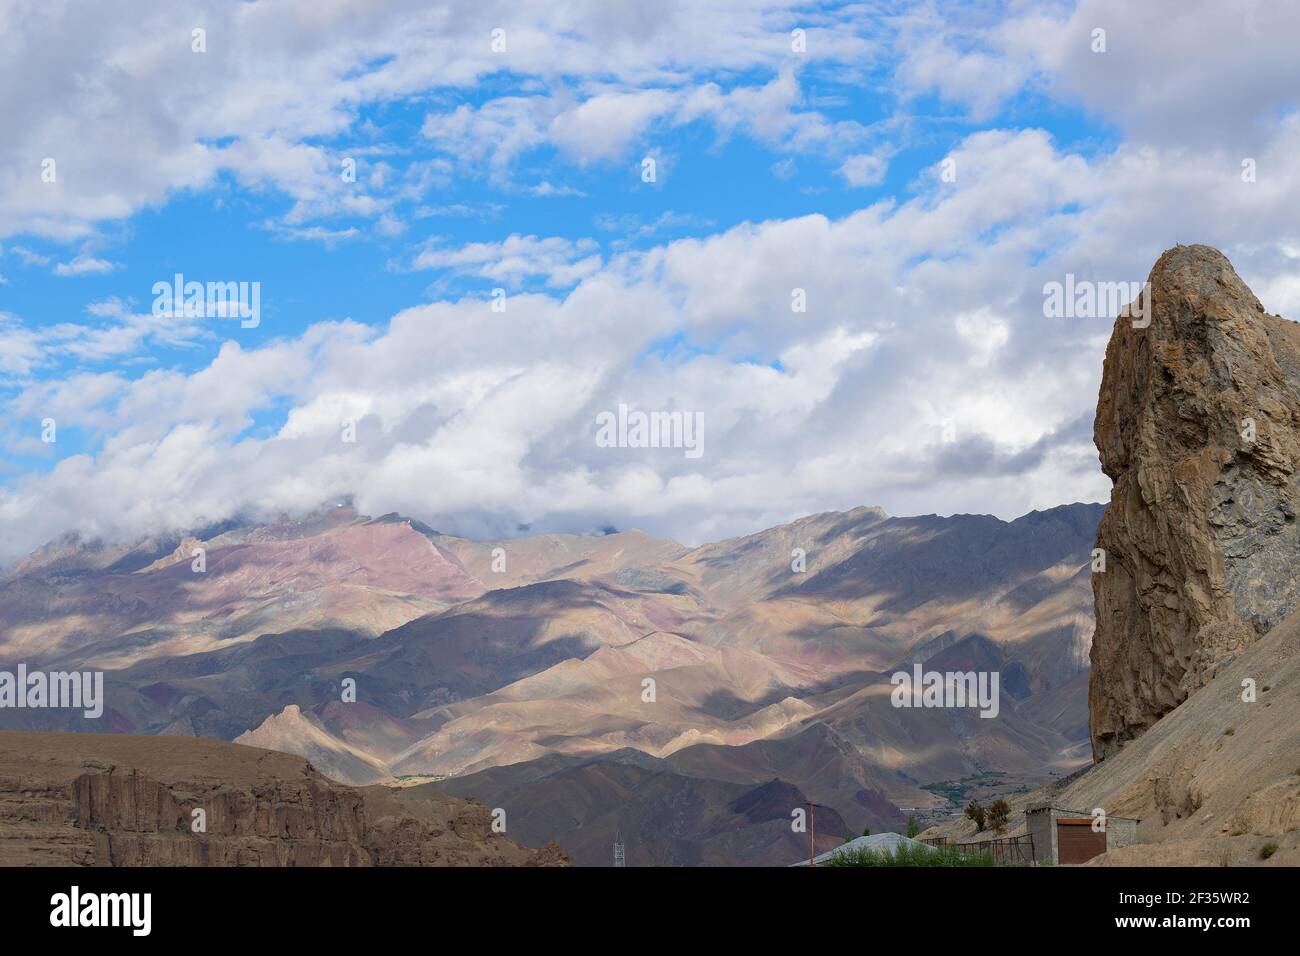 Schönes Spiel von Licht und Schatten auf den Bergen von Mulbekh, Himalaya-Berge Schatten der Wolken im Hintergrund, Ladakh, Jammu und Kaschmir, Indien Stockfoto